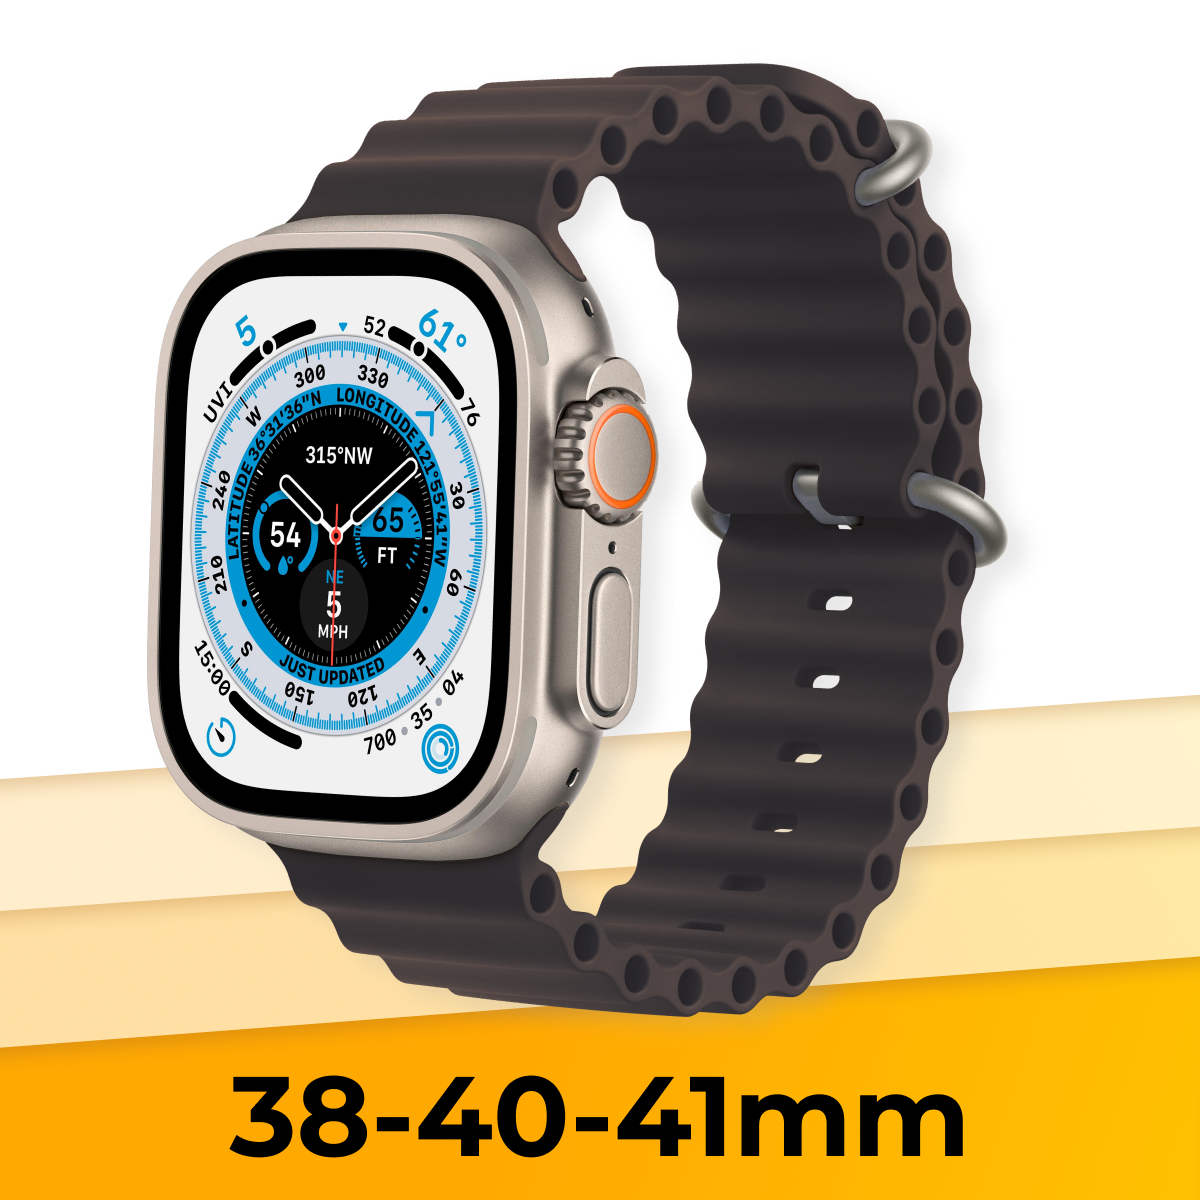 Силиконовый браслет Ocean Band на смарт часы Apple Watch 1-9, SE, 38-40-41 mm / Сменный ремешок для Эпл Вотч 1-9, СЕ / Древесный уголь